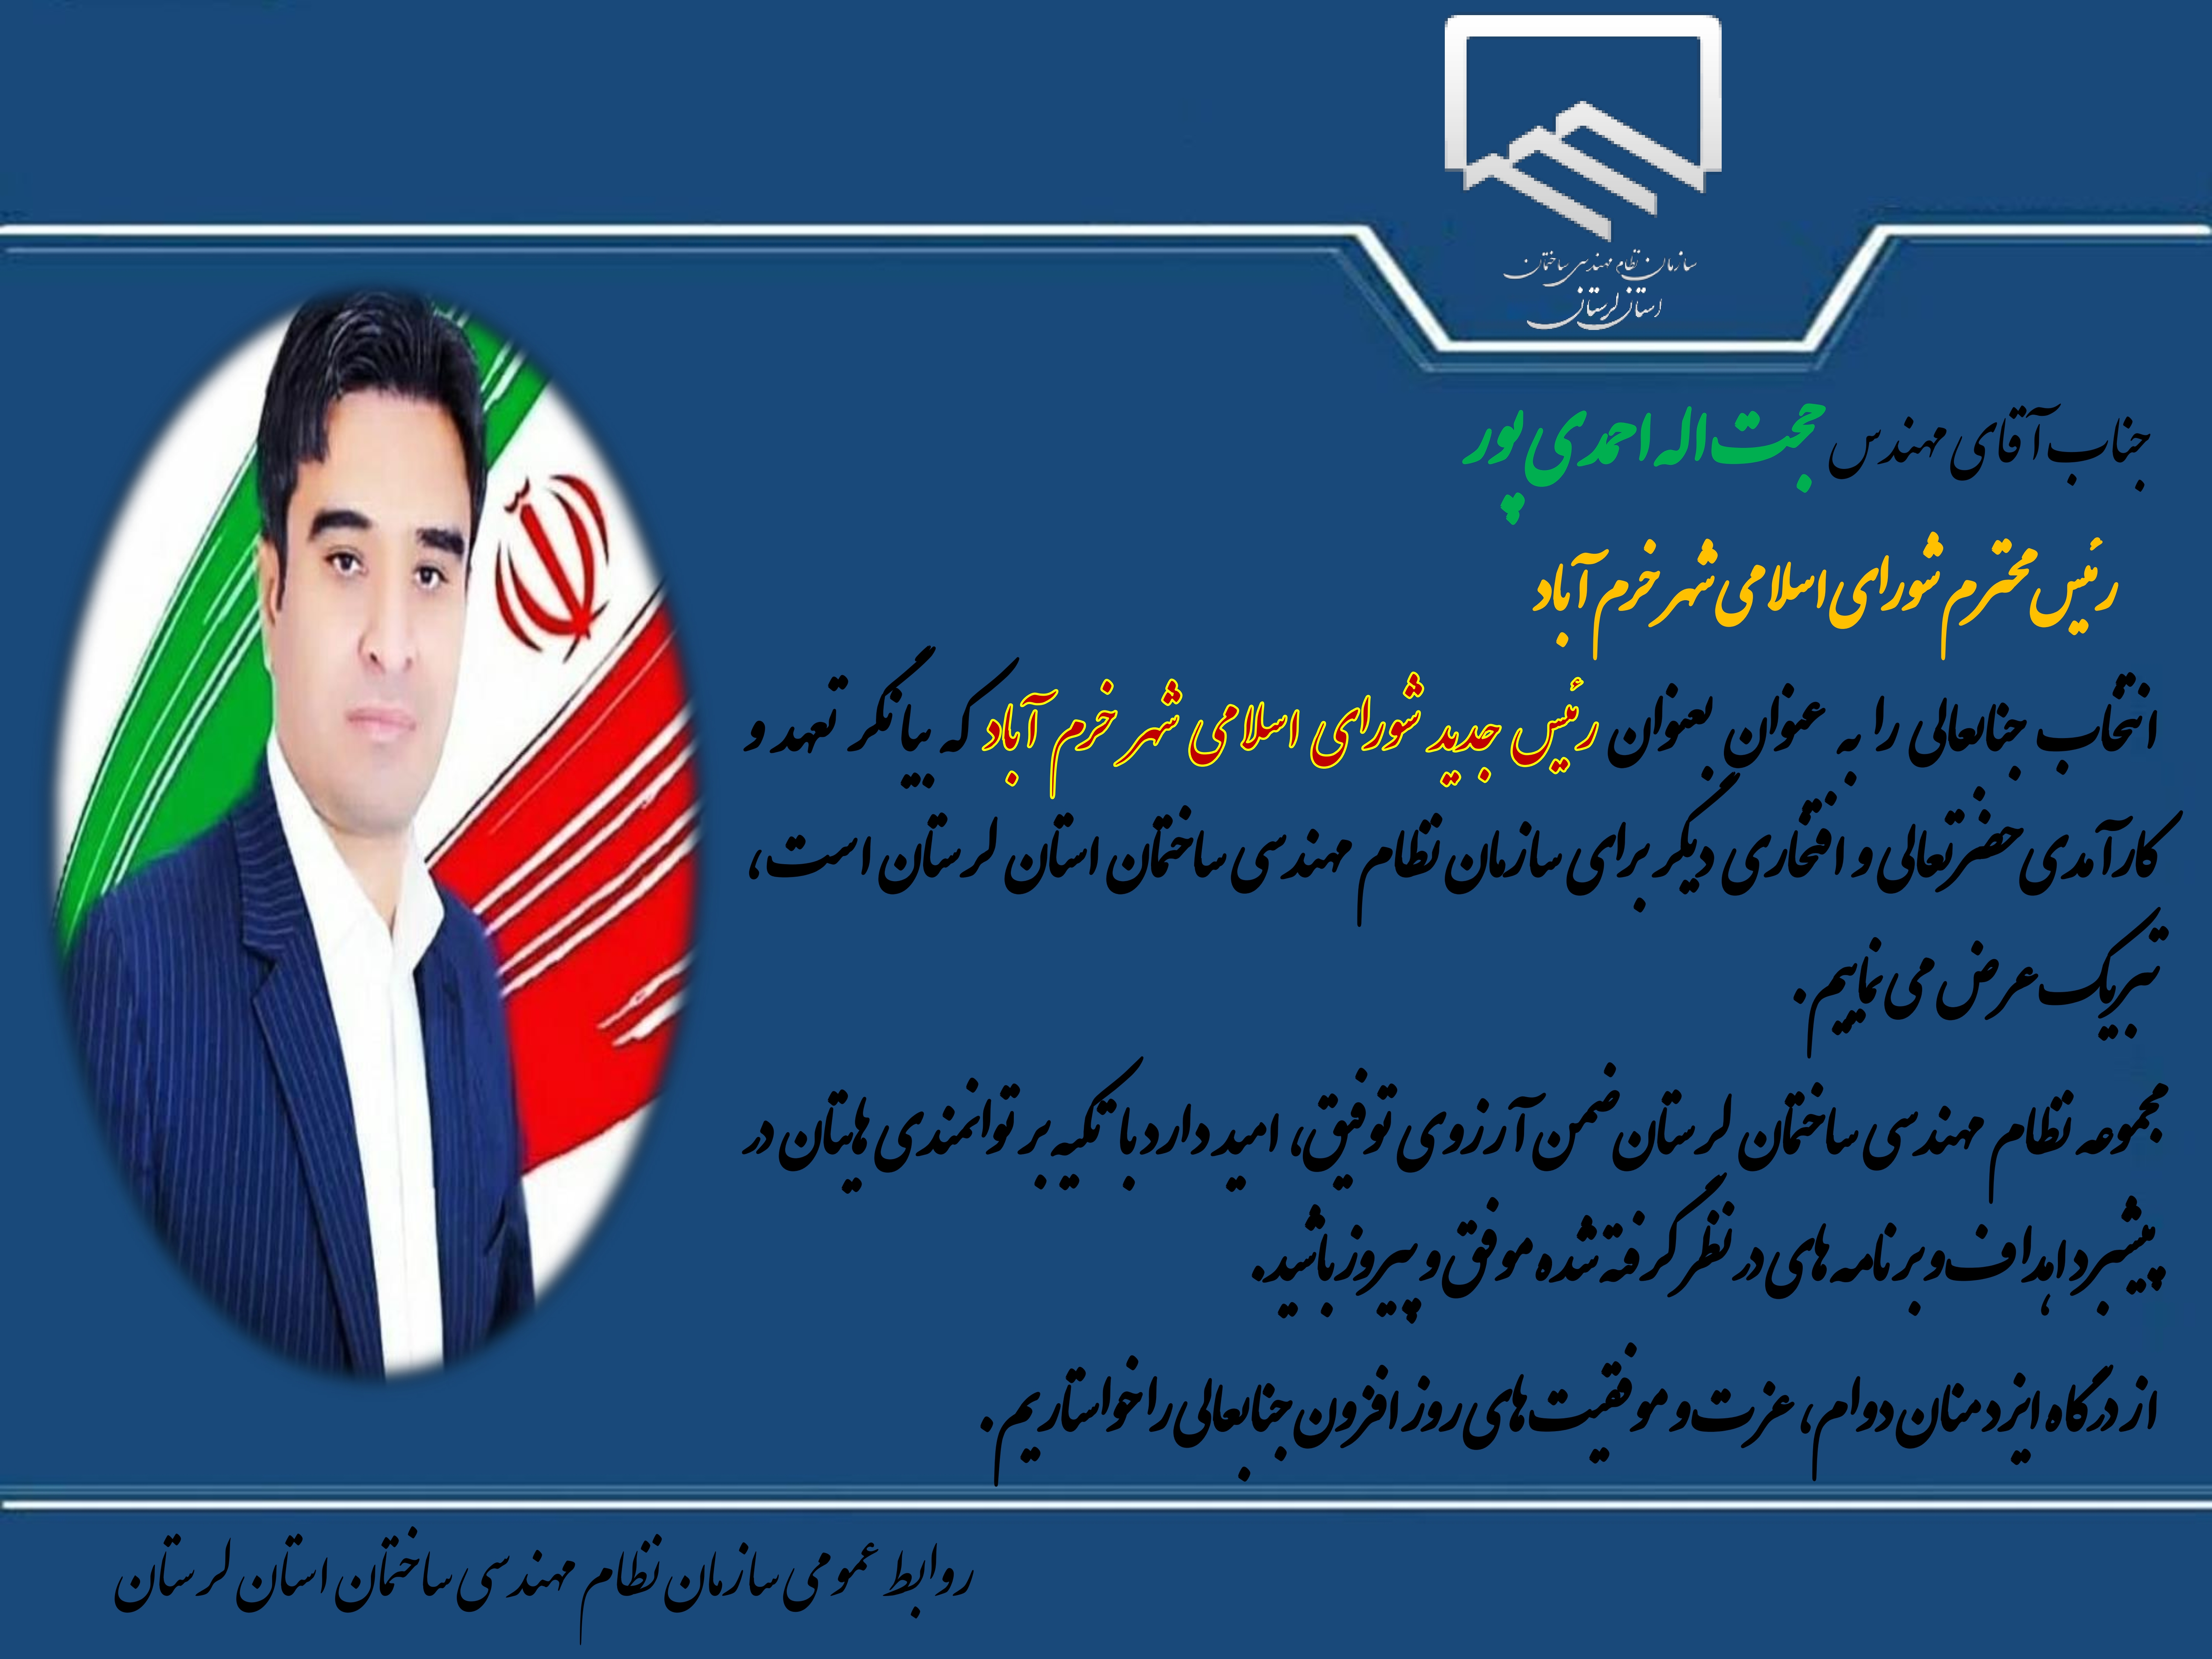 انتخاب جناب آقای مهندس حجت اله احمدی پور به عنوان رئیس شورای اسلامی شهر خرم آباد 